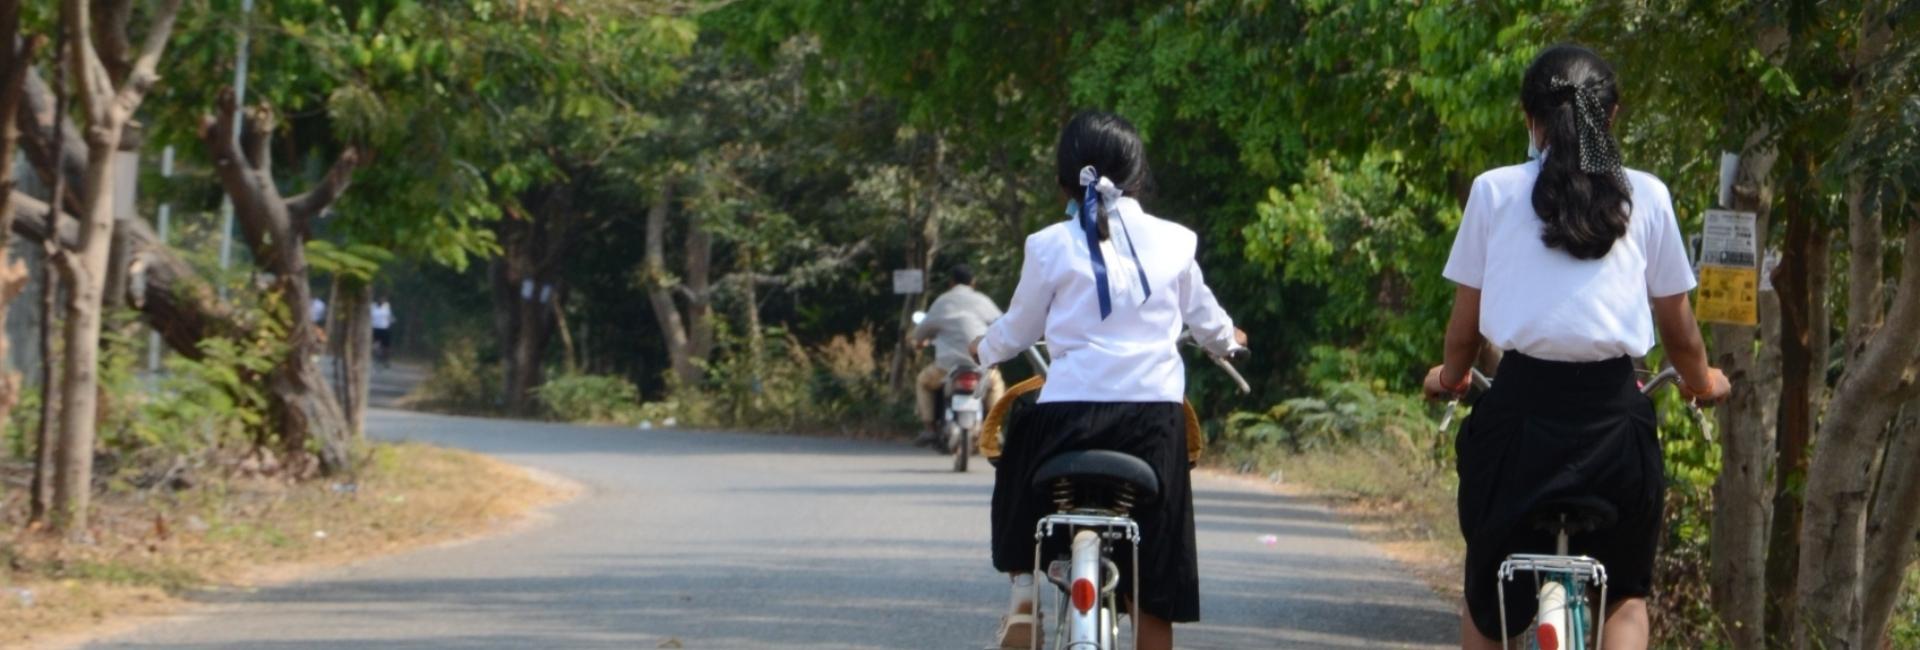 Buy 50 Bikes for Disadvantaged Girls in Rural Cambodia